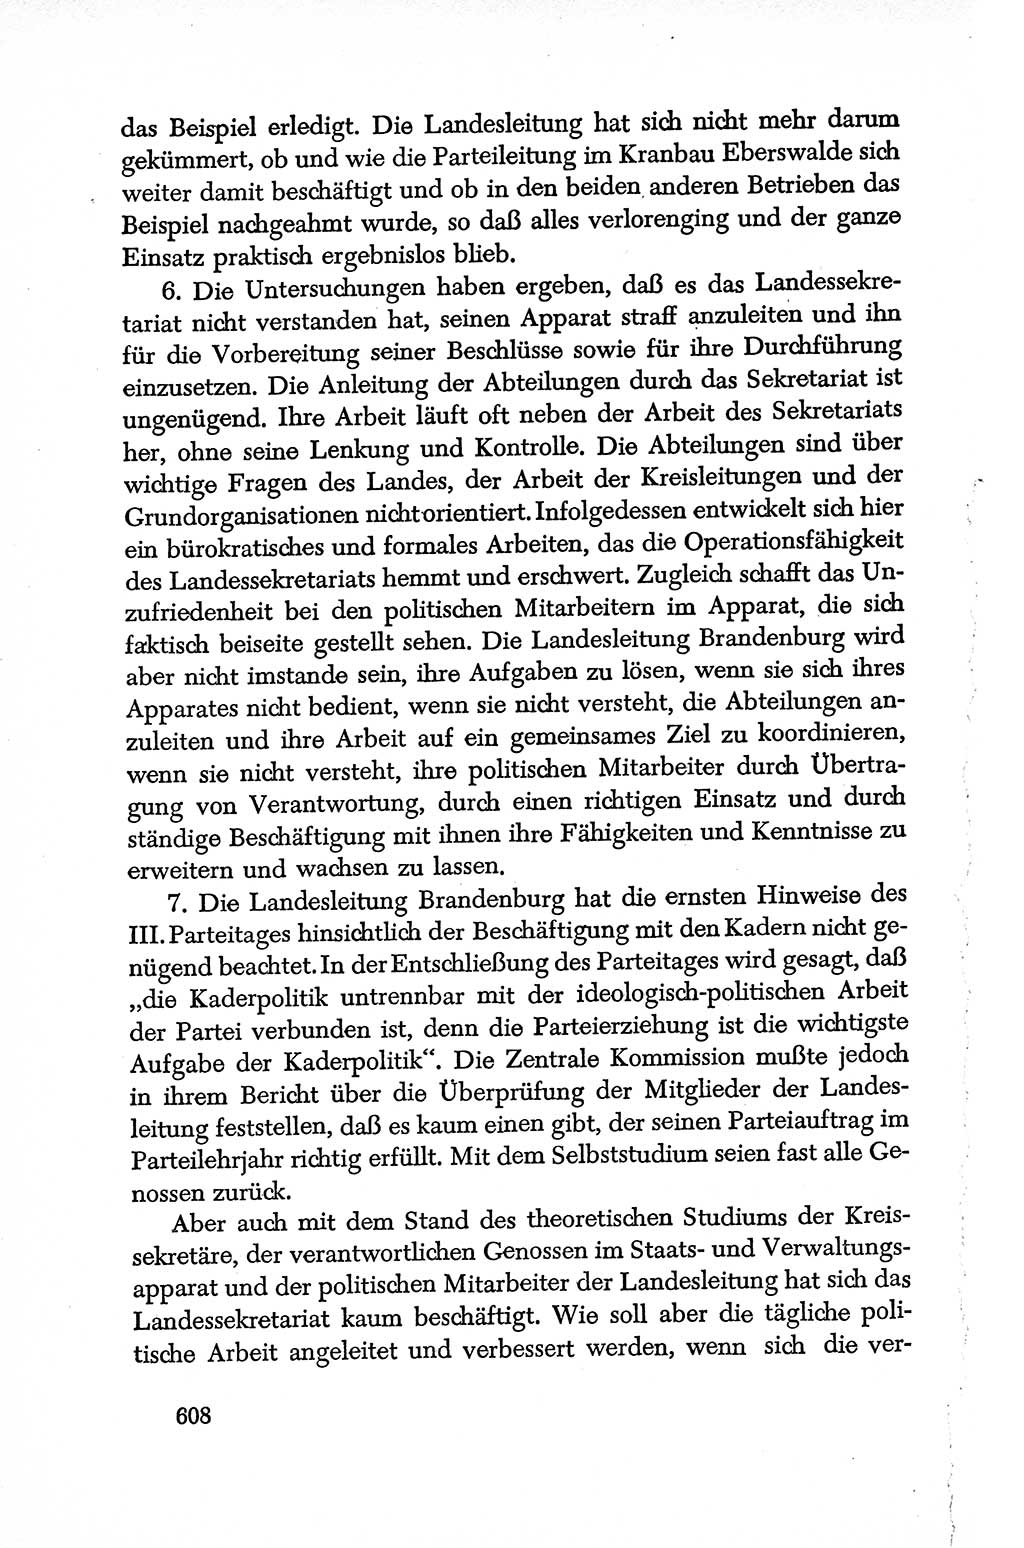 Dokumente der Sozialistischen Einheitspartei Deutschlands (SED) [Deutsche Demokratische Republik (DDR)] 1950-1952, Seite 608 (Dok. SED DDR 1950-1952, S. 608)